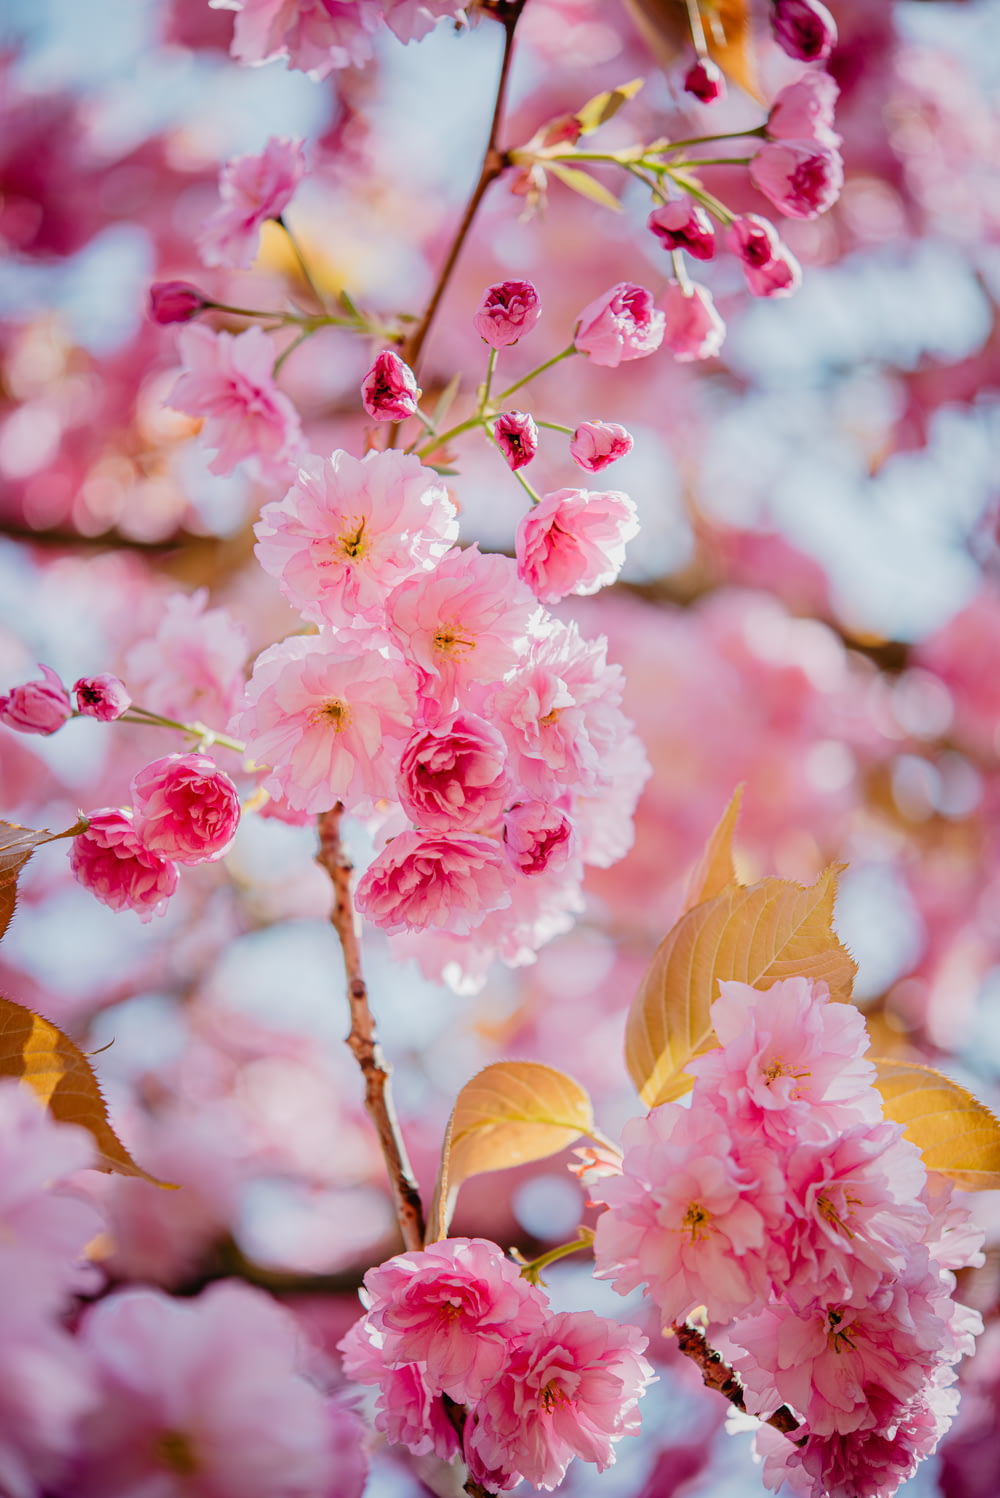 Las flores rosadas florecen en la rama de un árbol